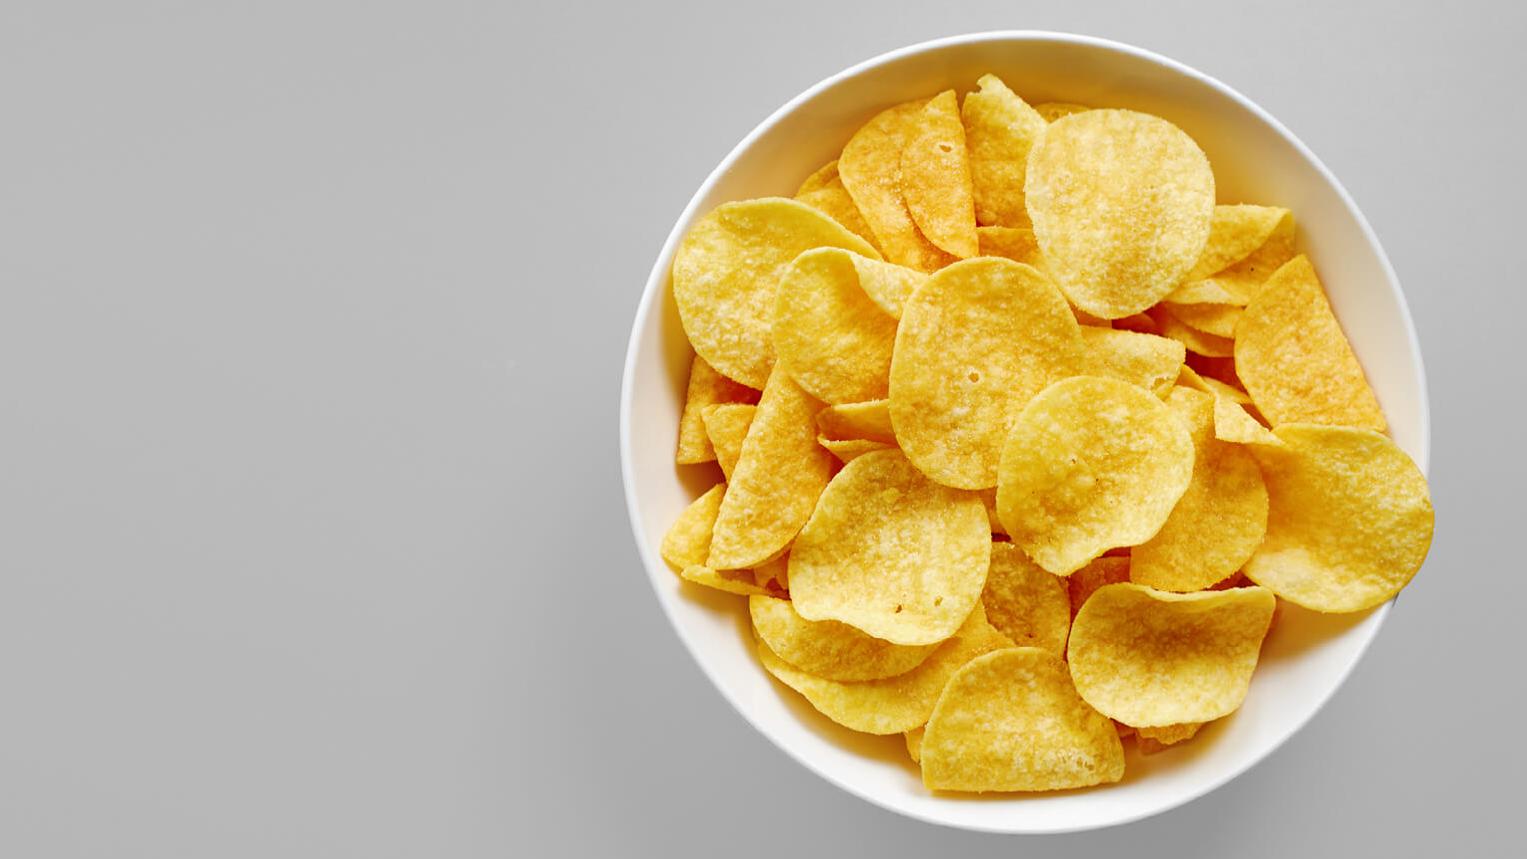 Potato chips, snacks in a bowl